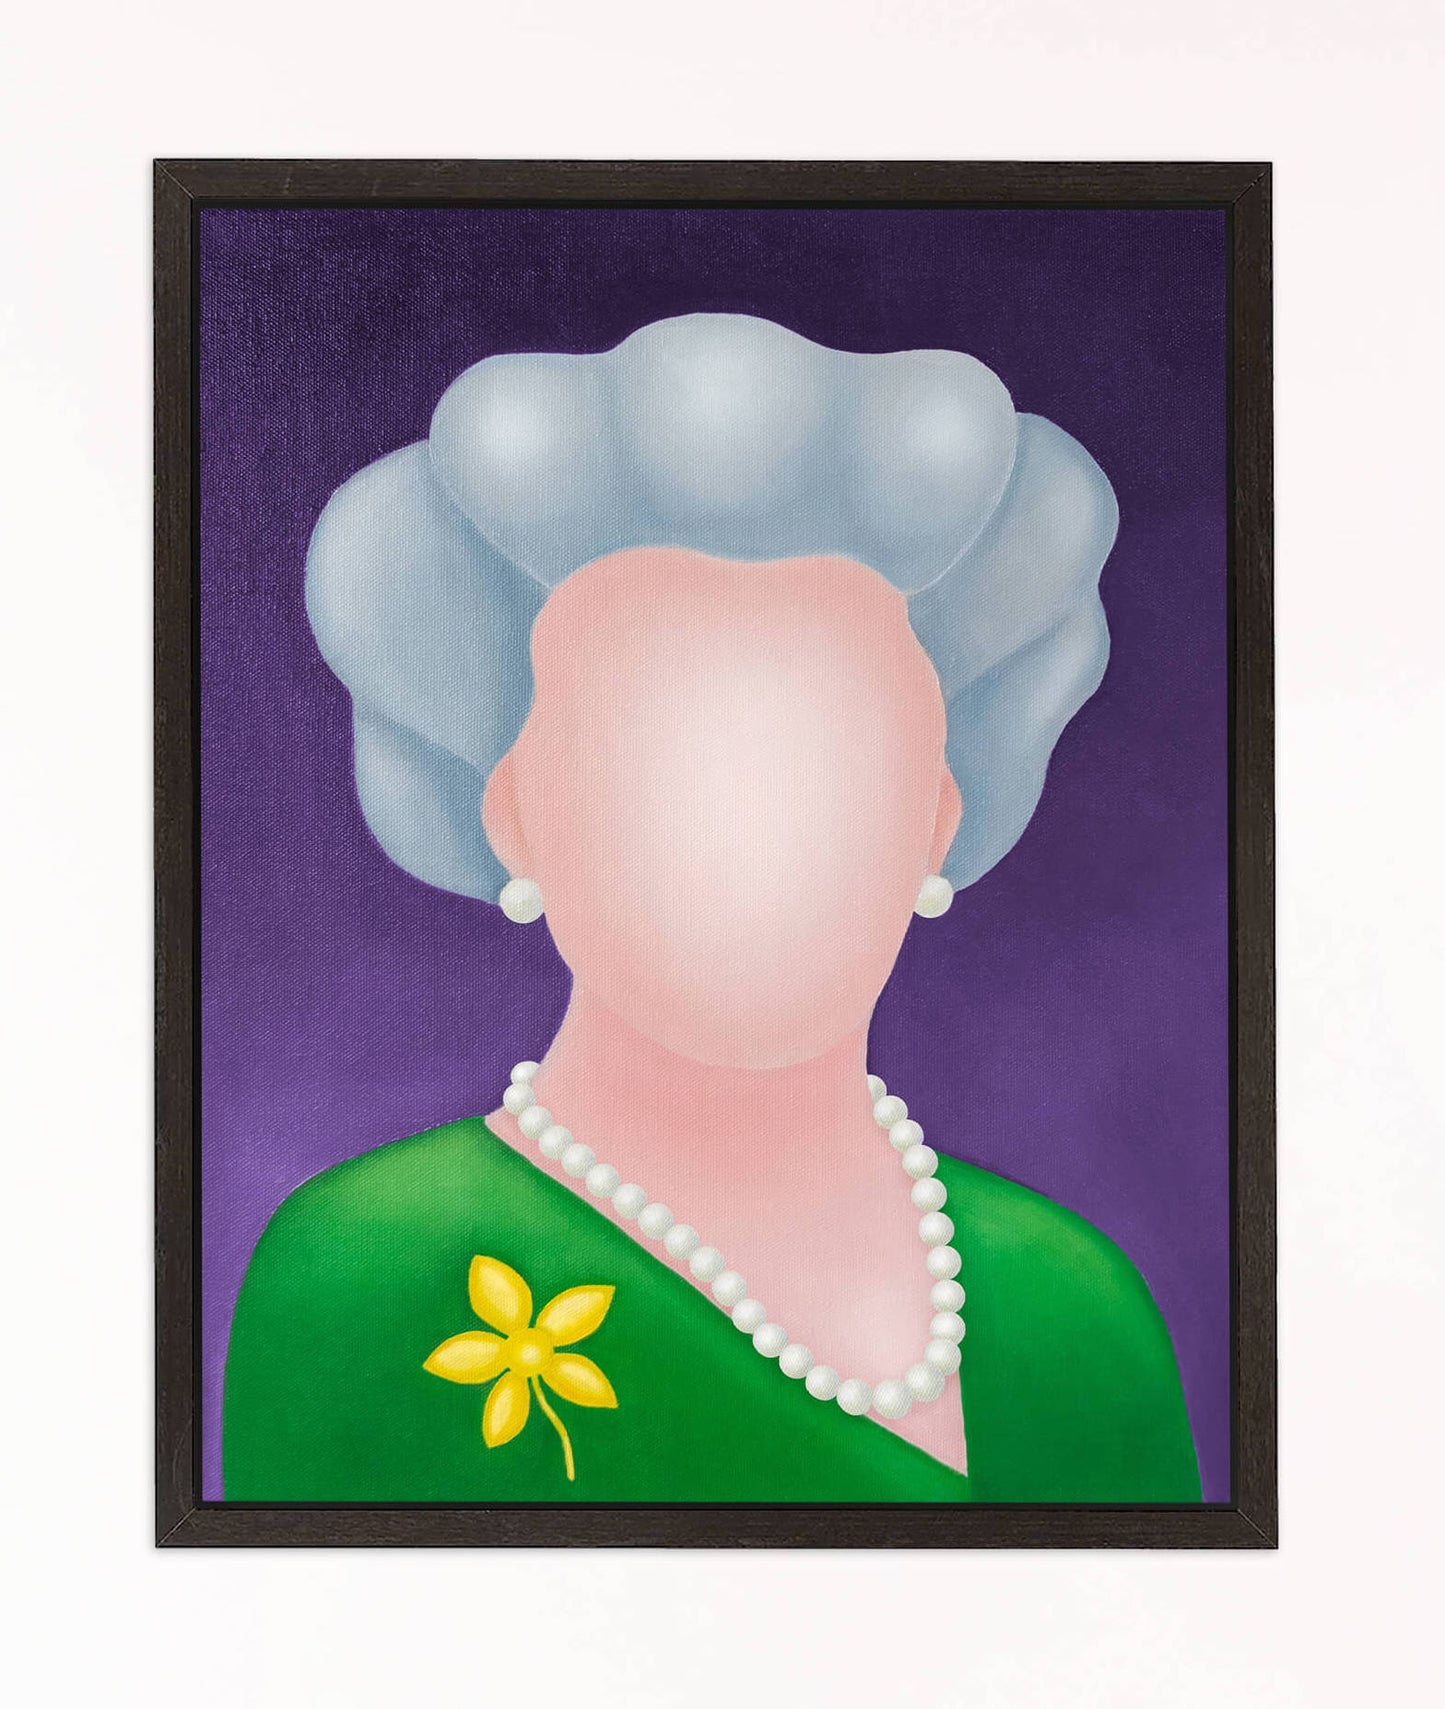 HM Queen Elizabeth II (2022)